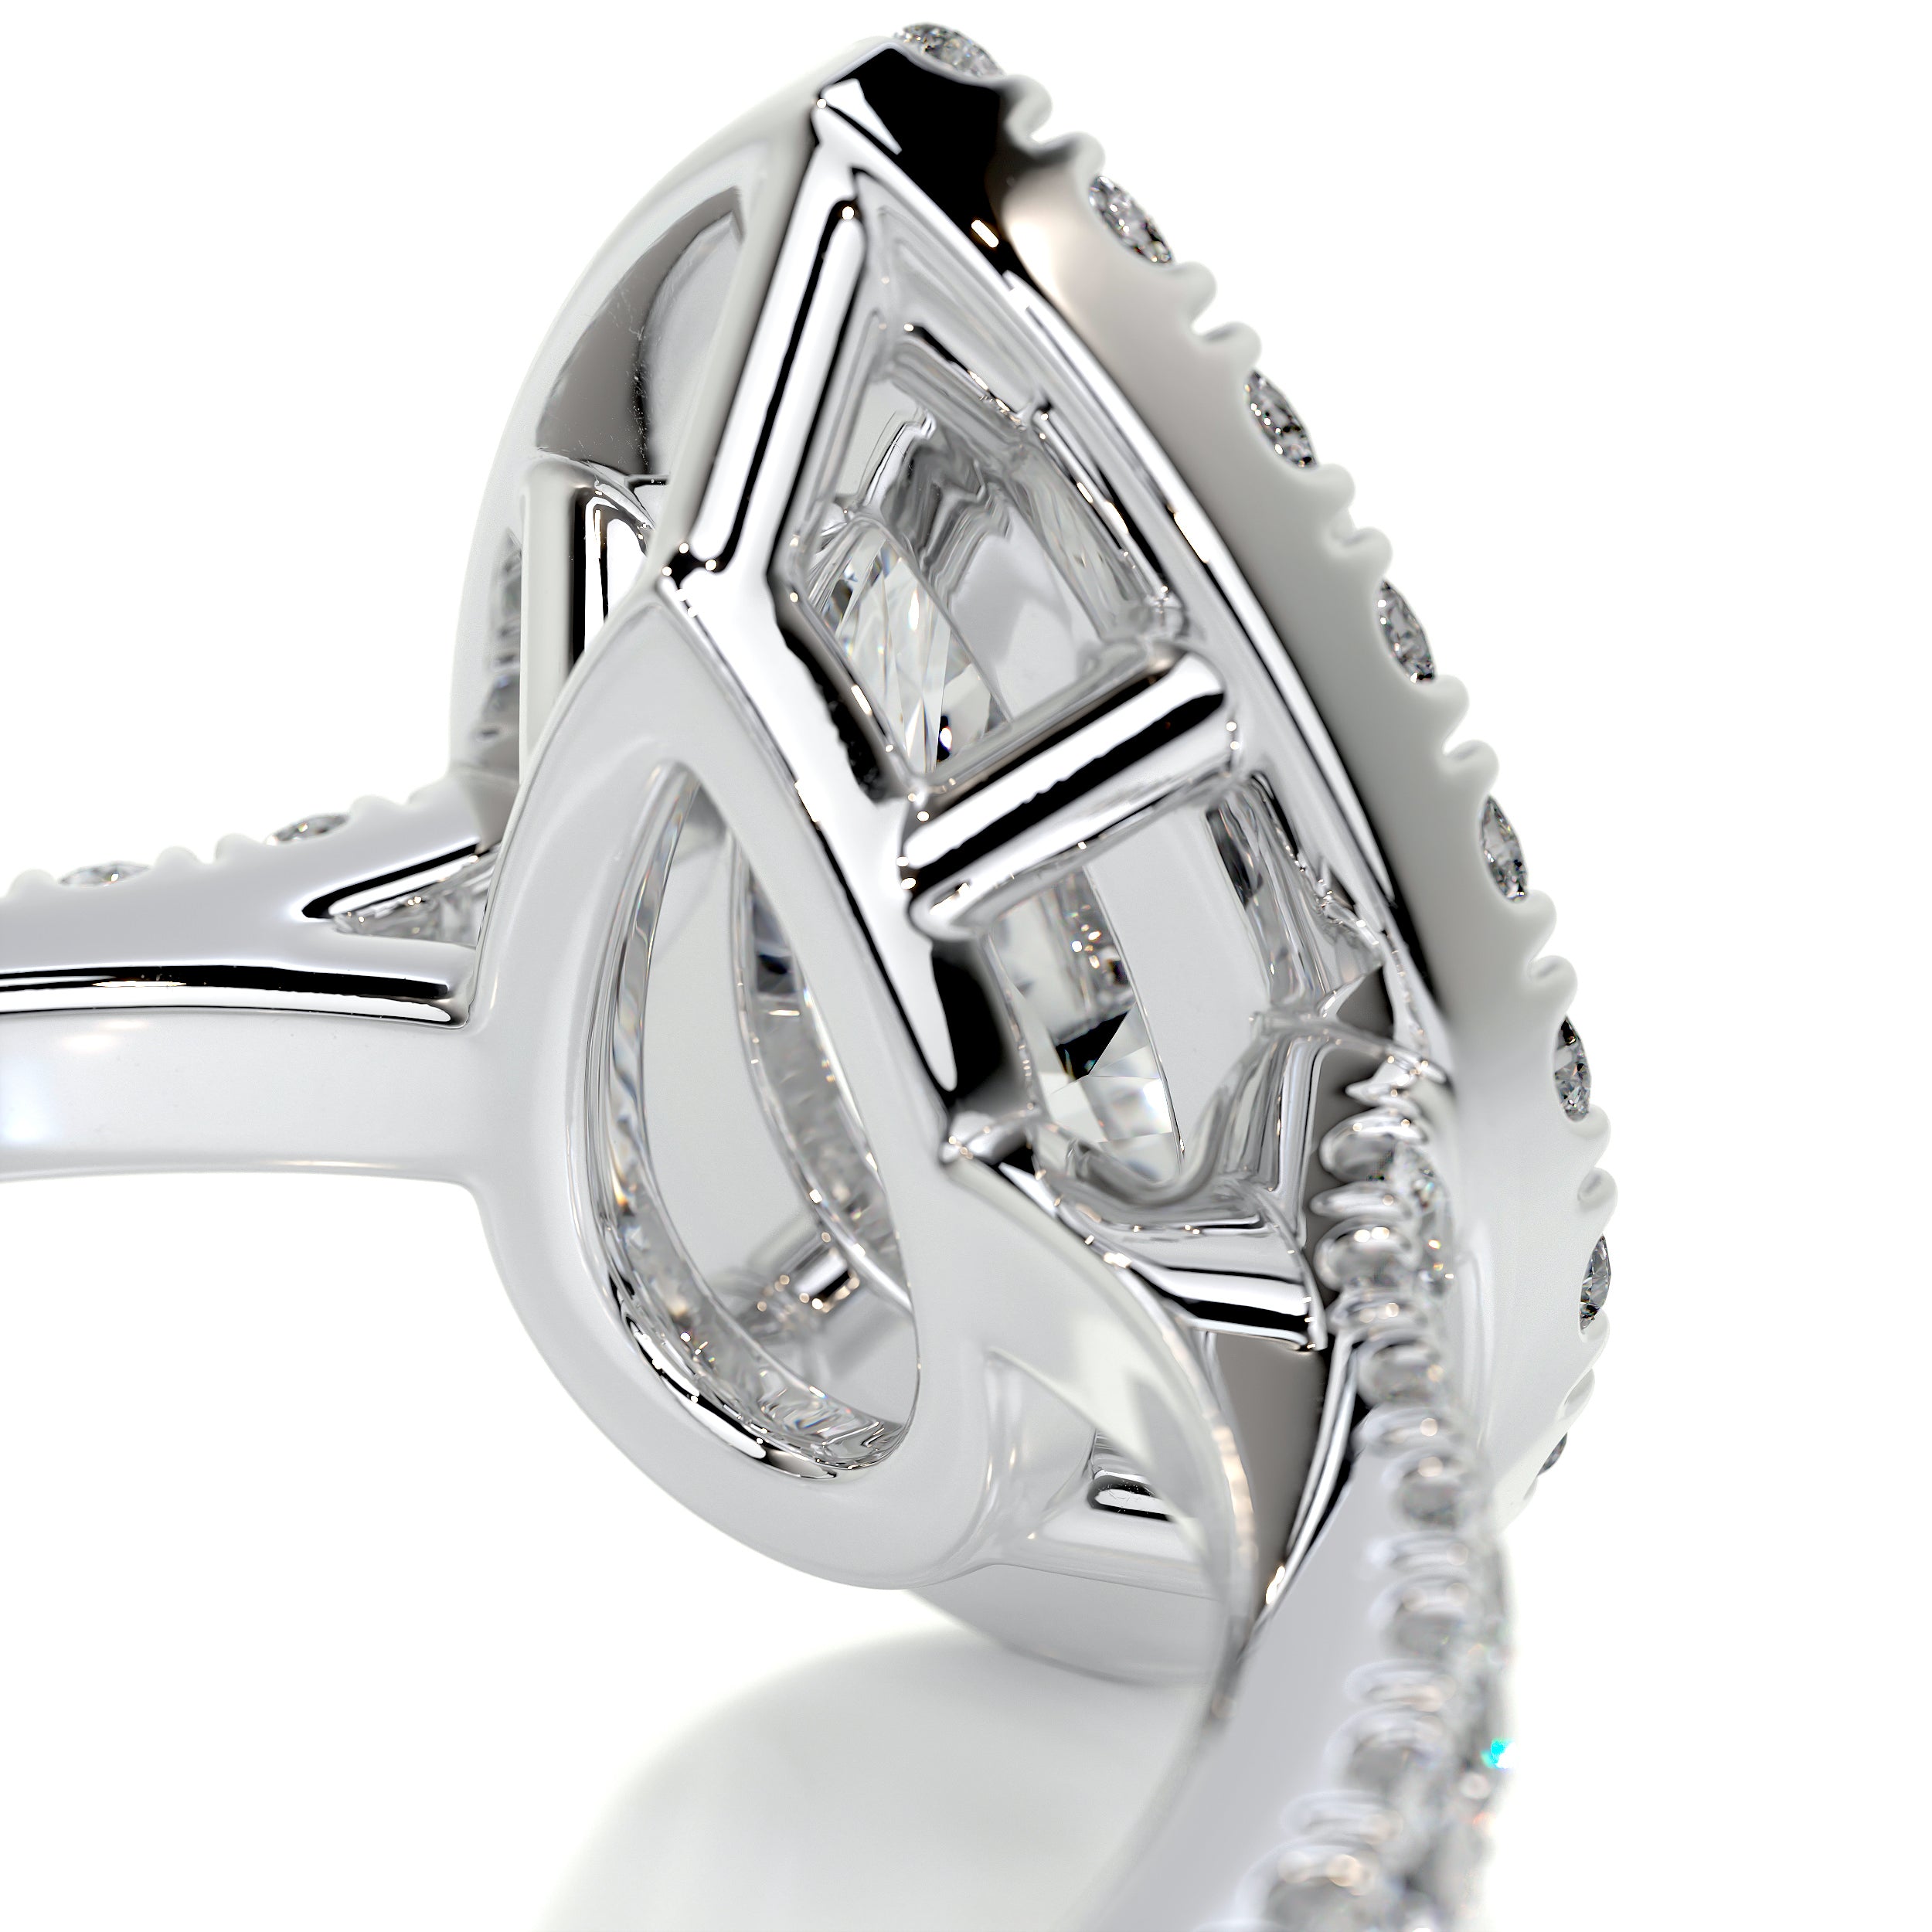 Sophia Diamond Engagement Ring -14K White Gold